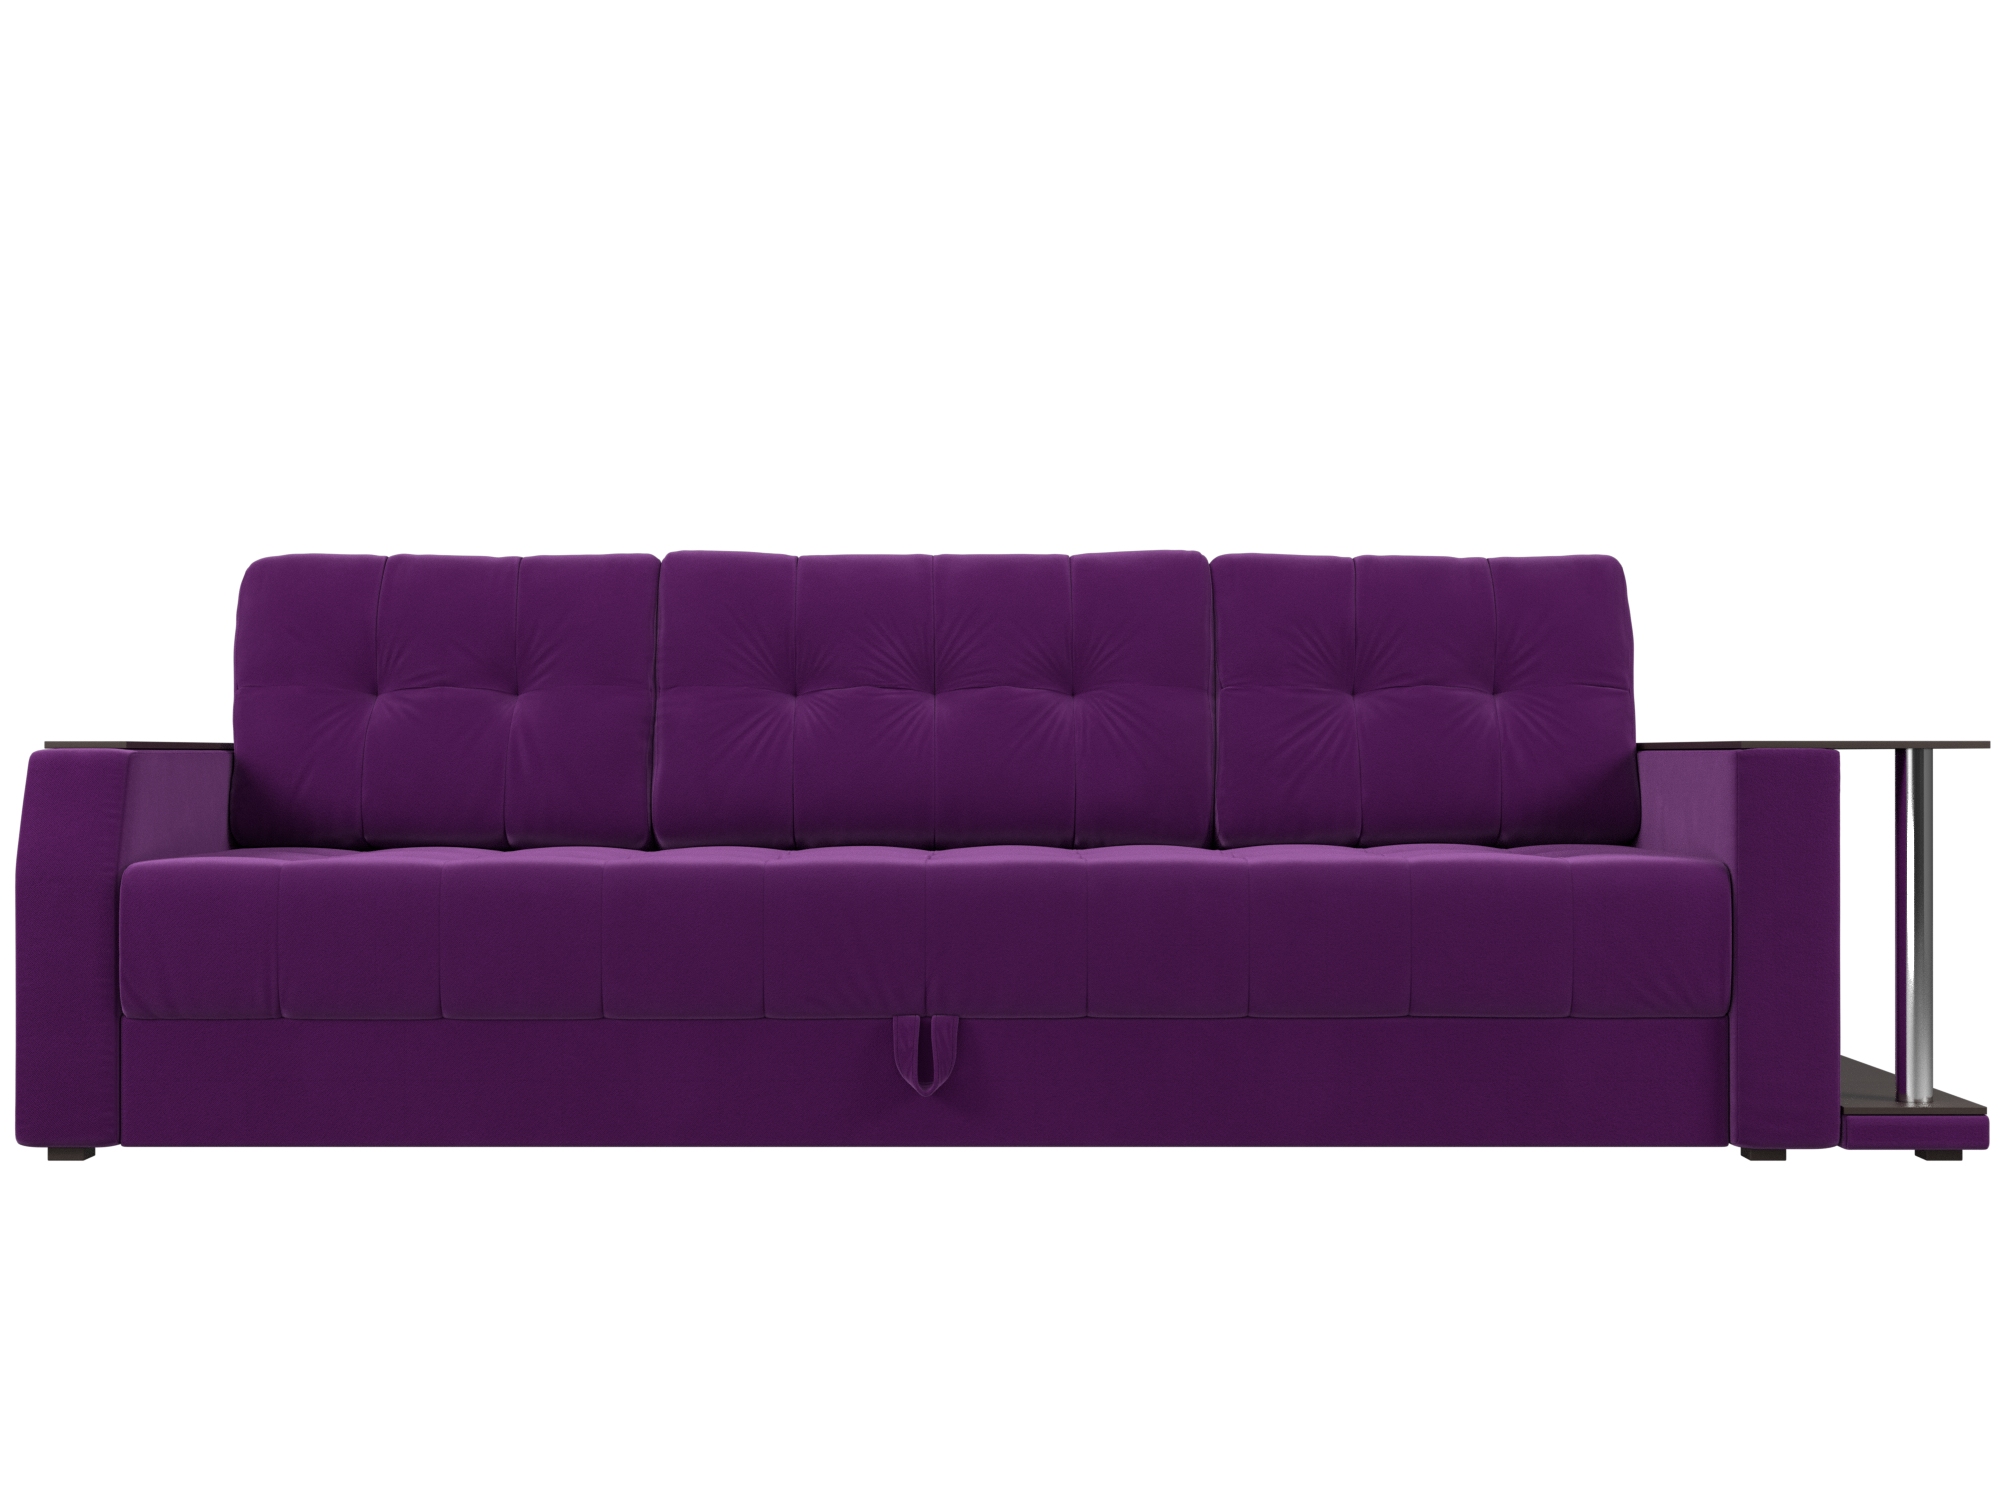 Диван-еврокнижка Атлант Правый MebelVia Фиолетовый, Микровельвет, ЛДСП диван еврокнижка мебелико сатурн микровельвет фиолетовый